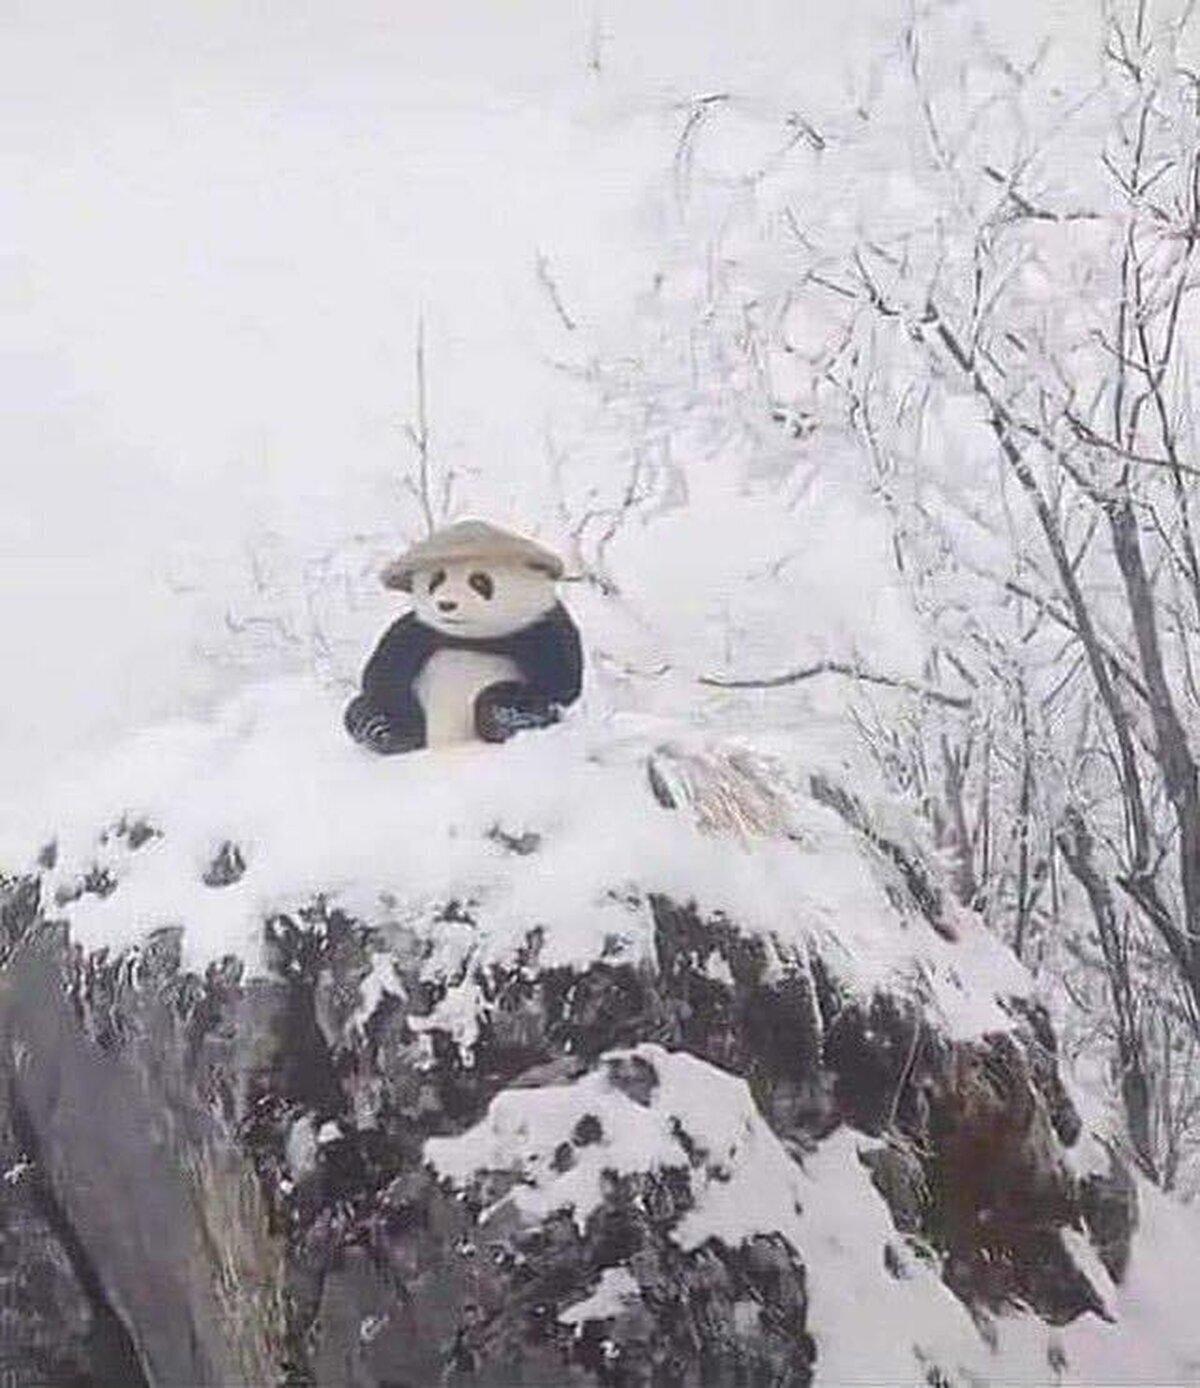 Han visto a Kung fu panda en la vida real